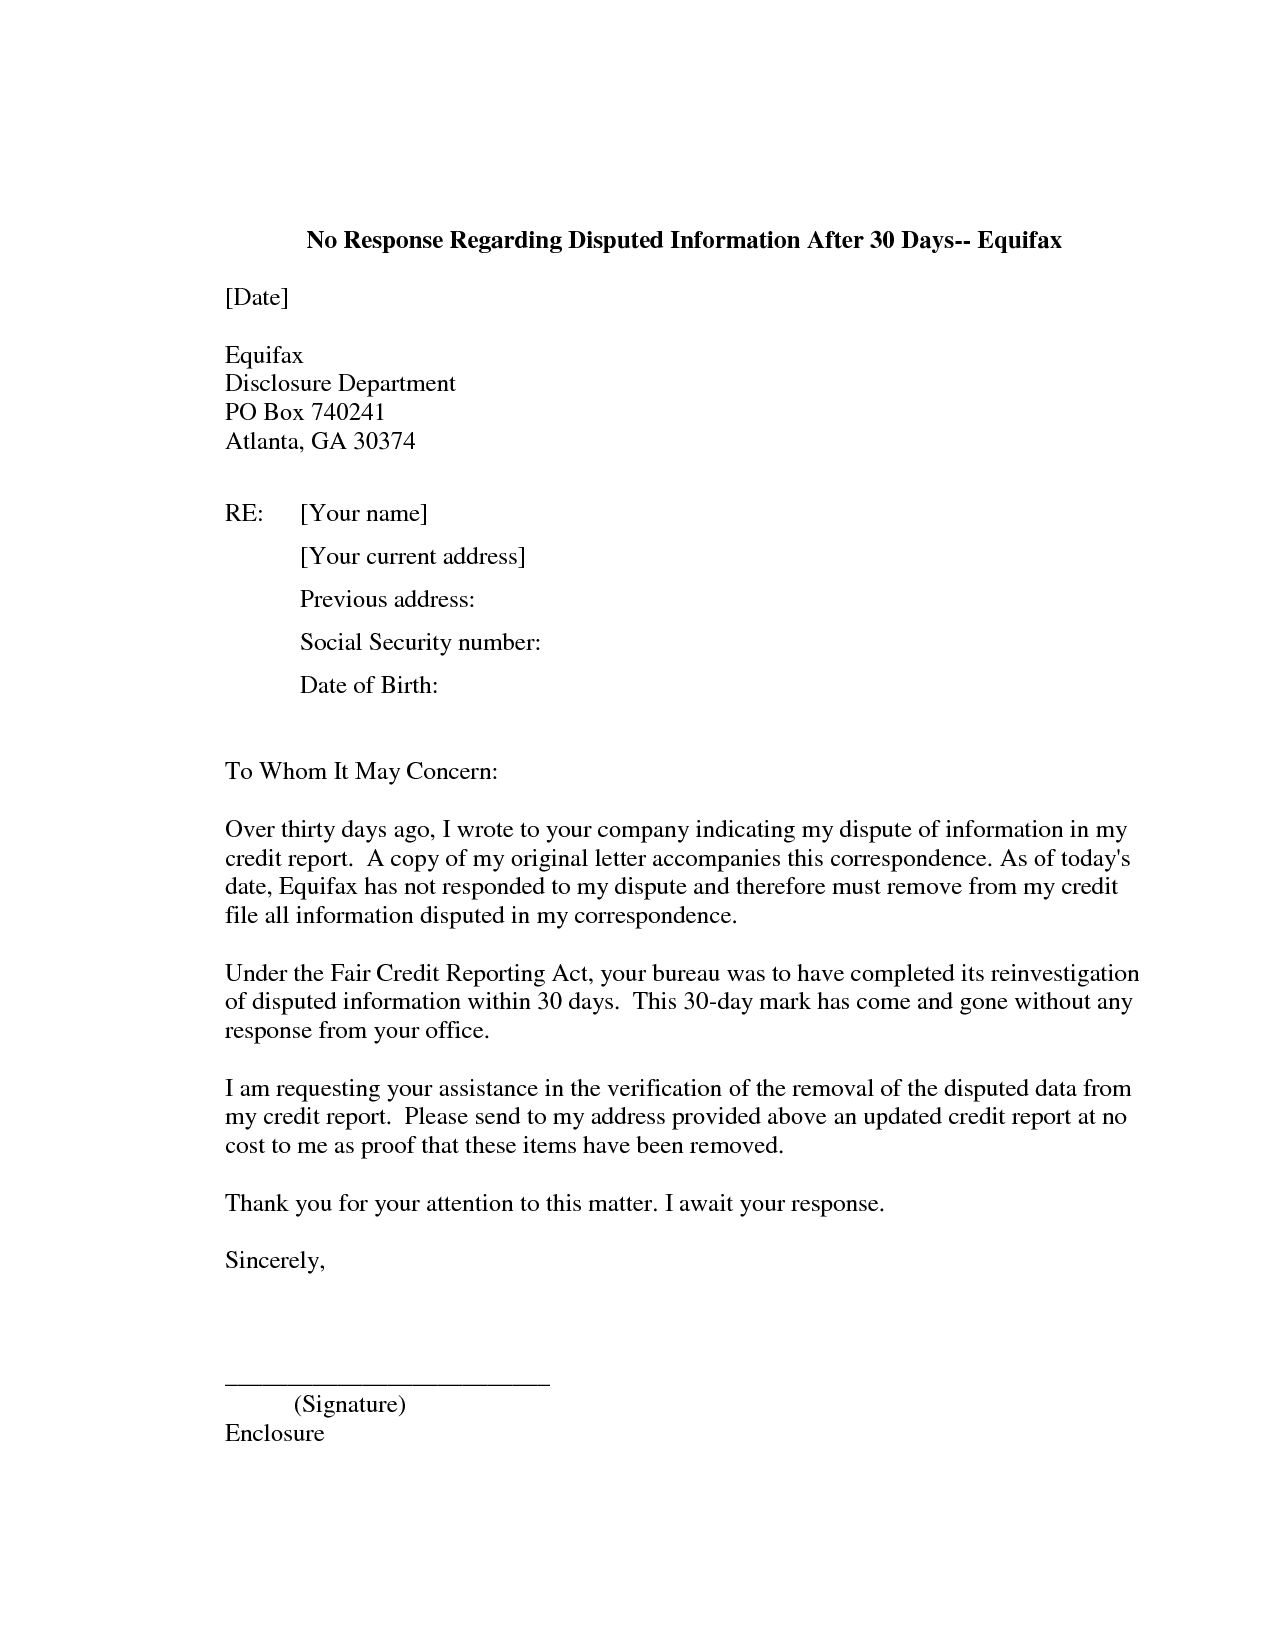 Car Repossession Dispute Letter Template - Credit Report Template Credit Report Dispute Letter Template Credit